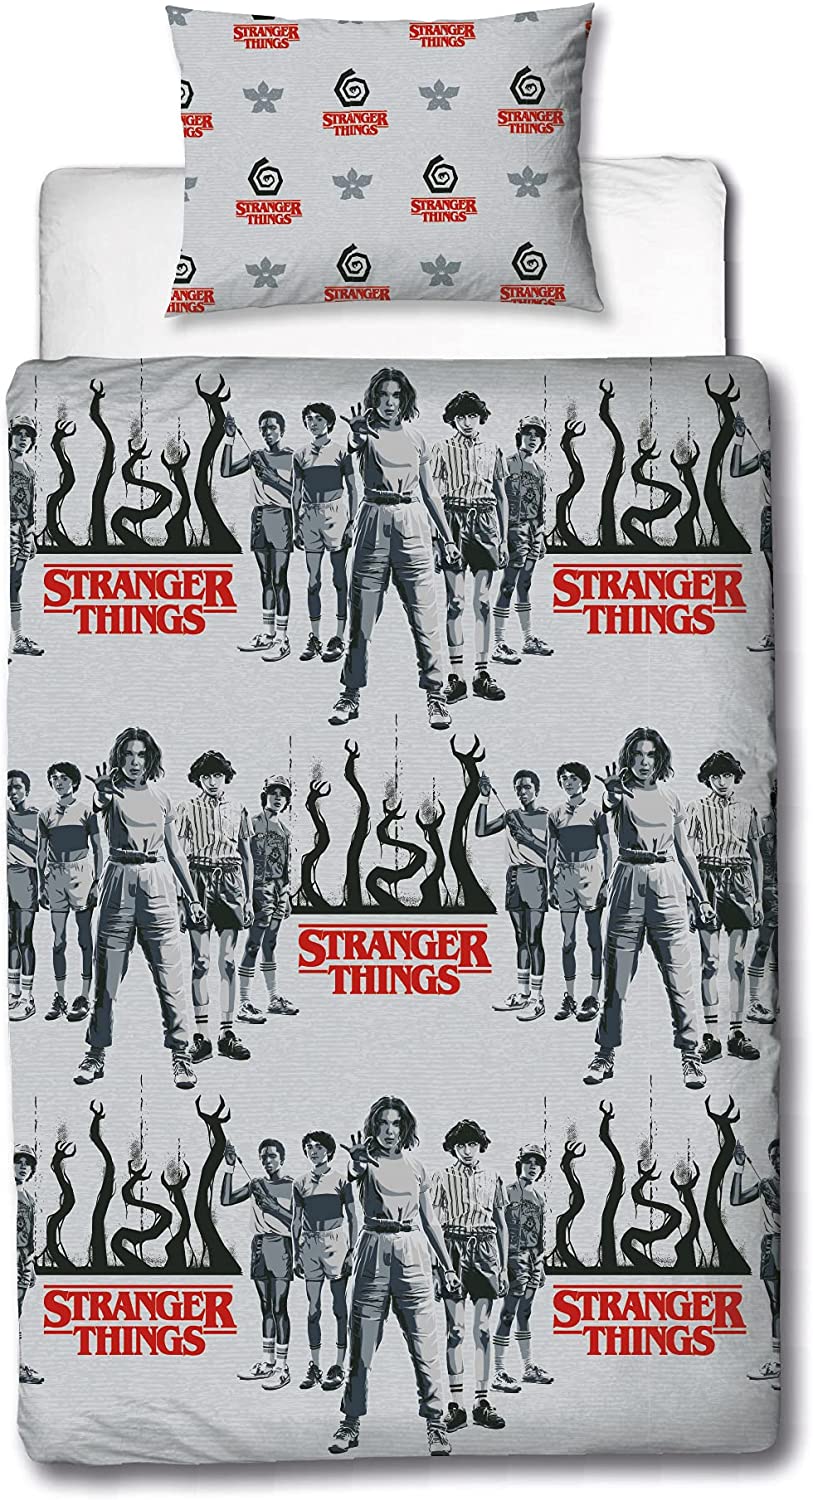 Official Stranger Things Duvet Cover Dark Side Design | Grey Reversible 2 Sided